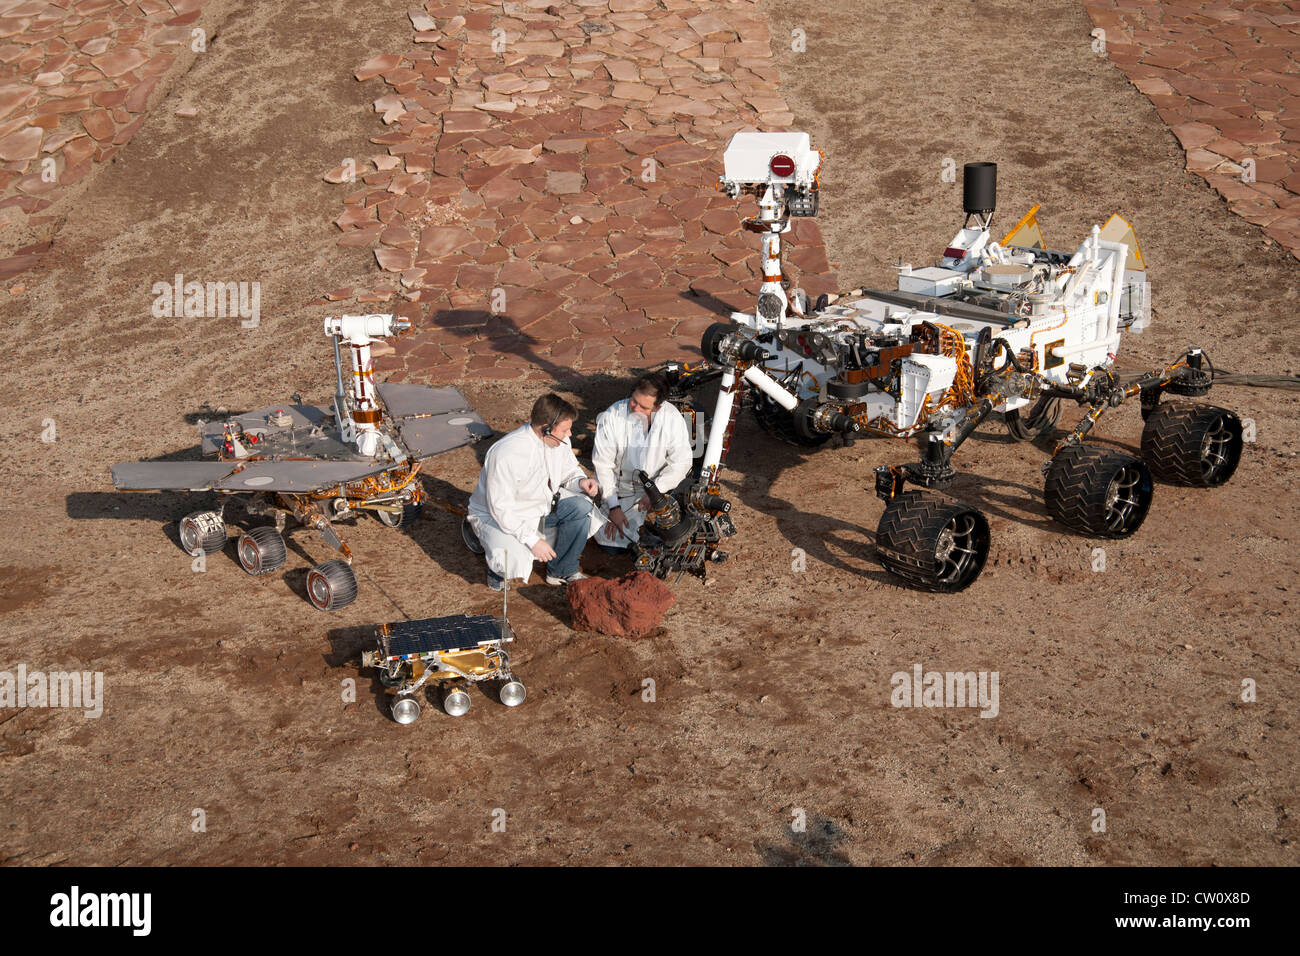 Dos ingenieros con la nave Mars rover Sojourner:, prueba del proyecto Mars Exploration Rover rover y curiosidad Foto de stock